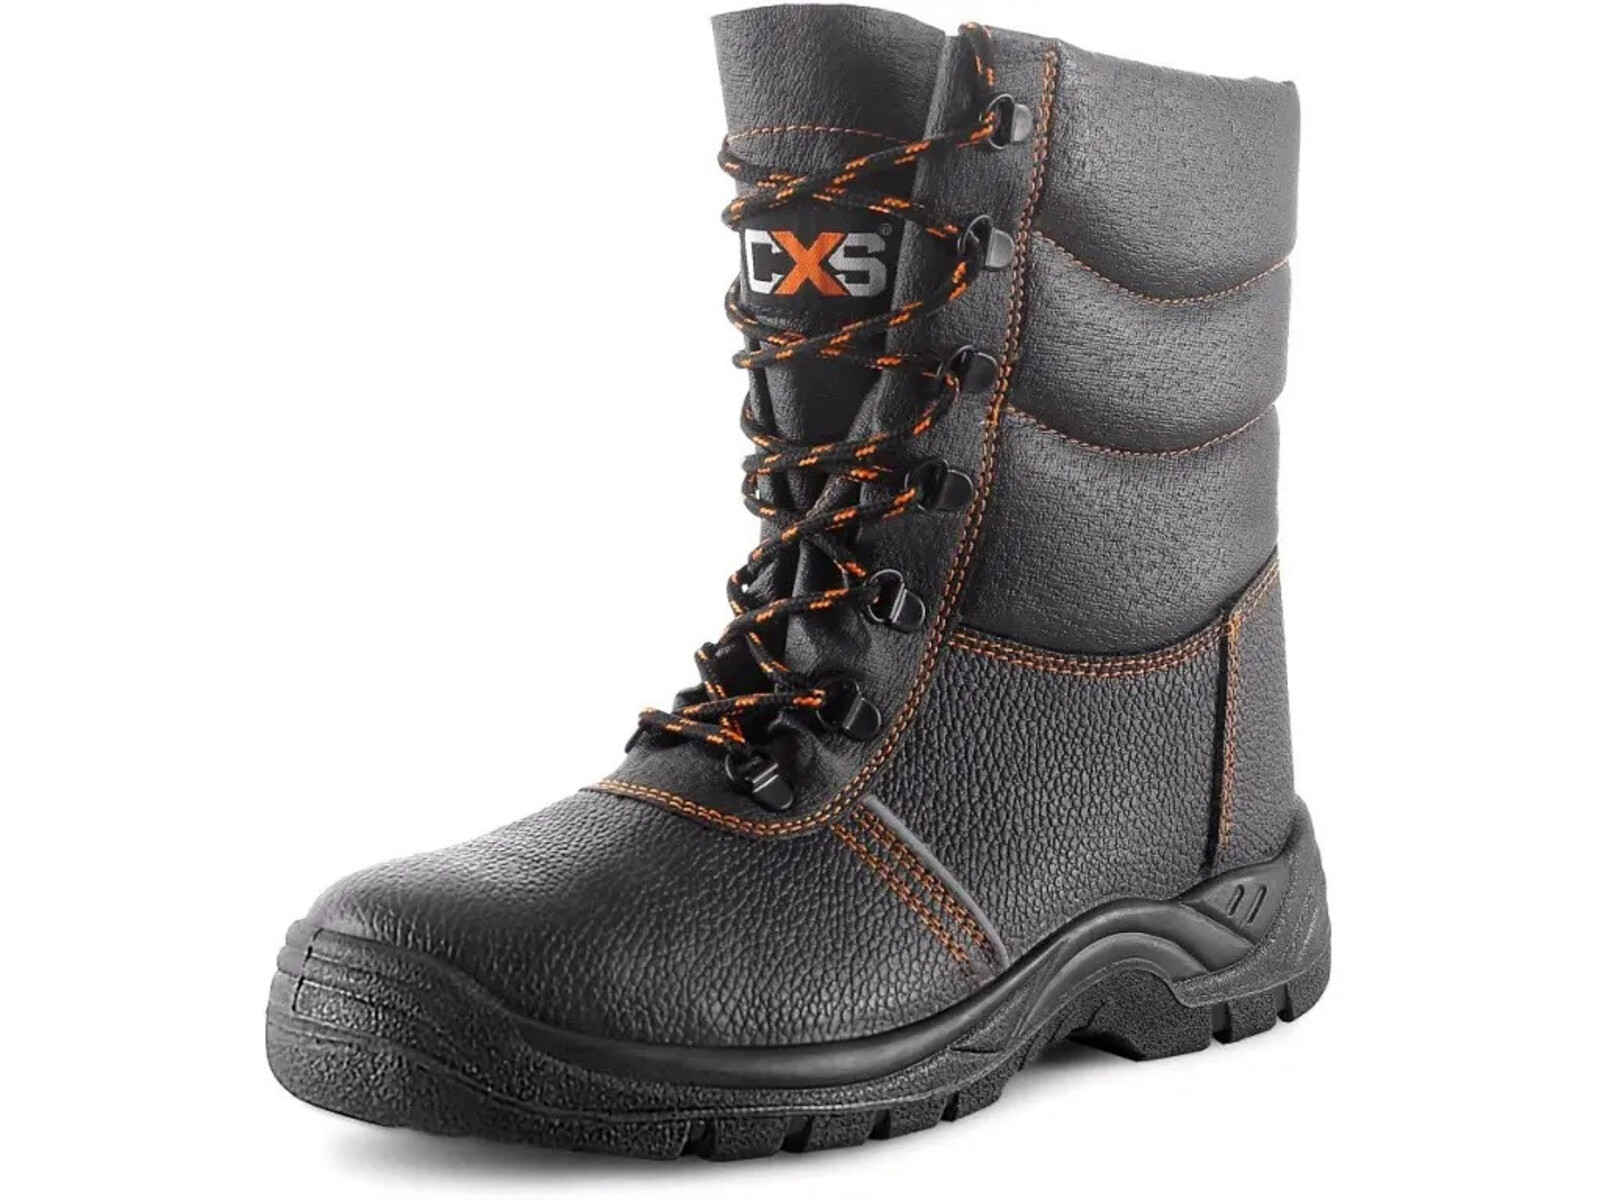 Zimná bezpečnostná poloholeňová obuv CXS Stone Topaz Winter S3 SRC - veľkosť: 40, farba: čierna/oranžová